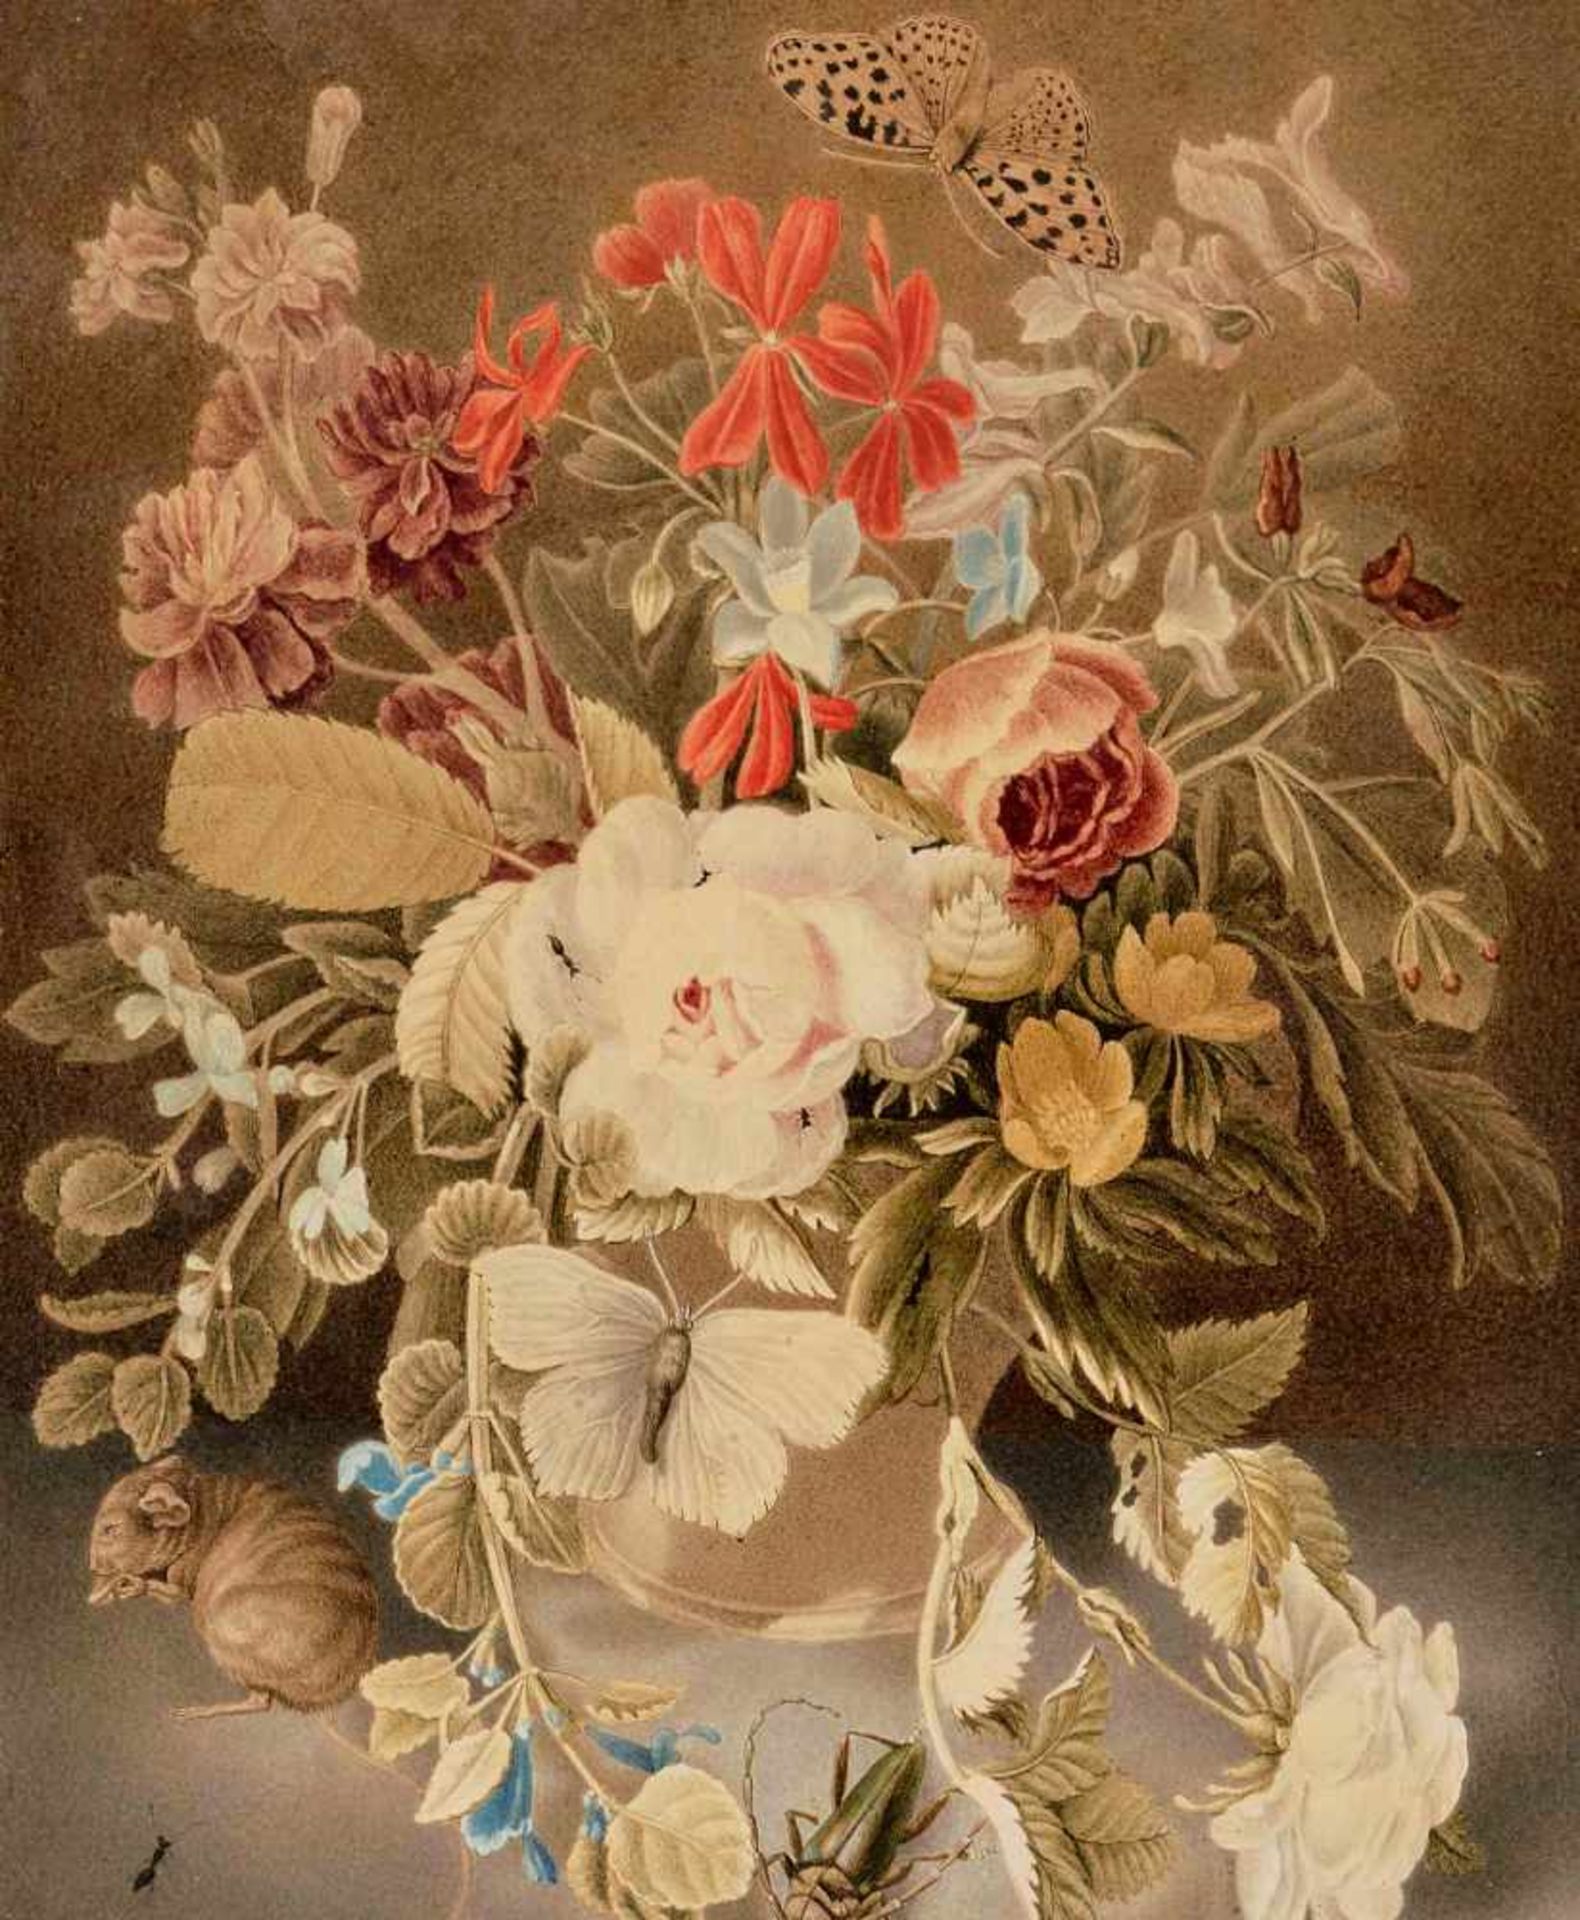 Deutschland, Anfang 19.Jh.Blumenstillleben mit Insekten und einer Maus. Aquarell auf hauchdünnem